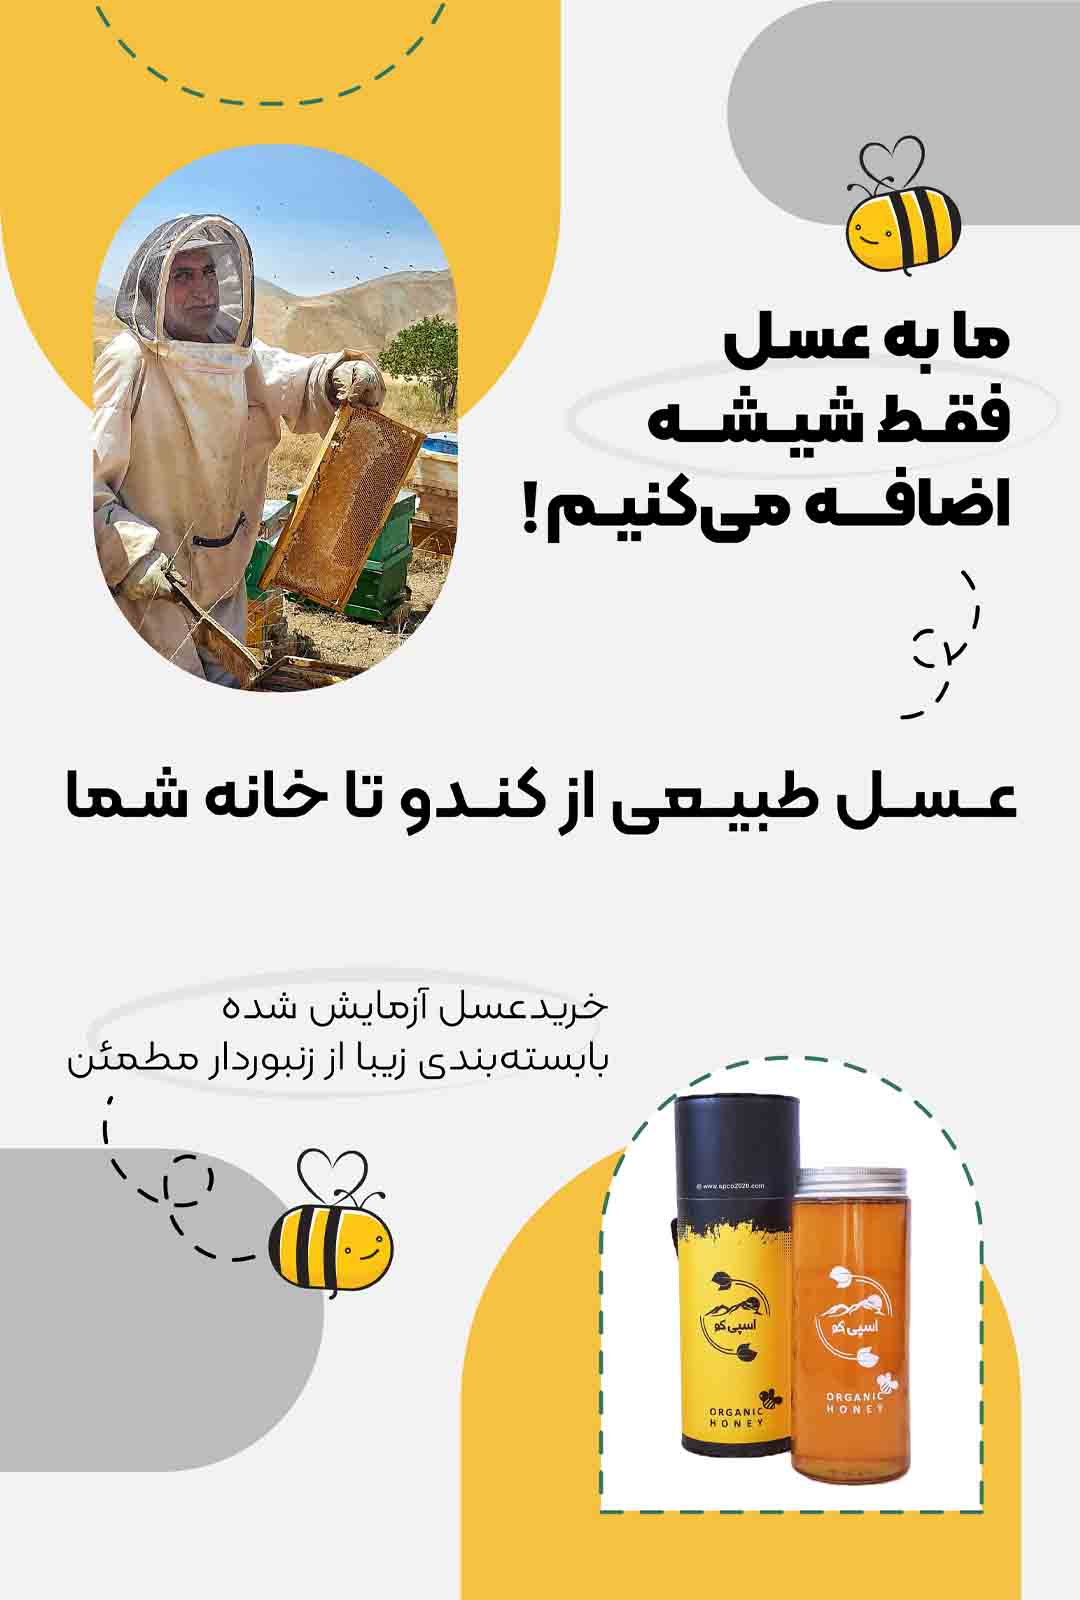 خرید عسل طبیعی از کندو تا خانه